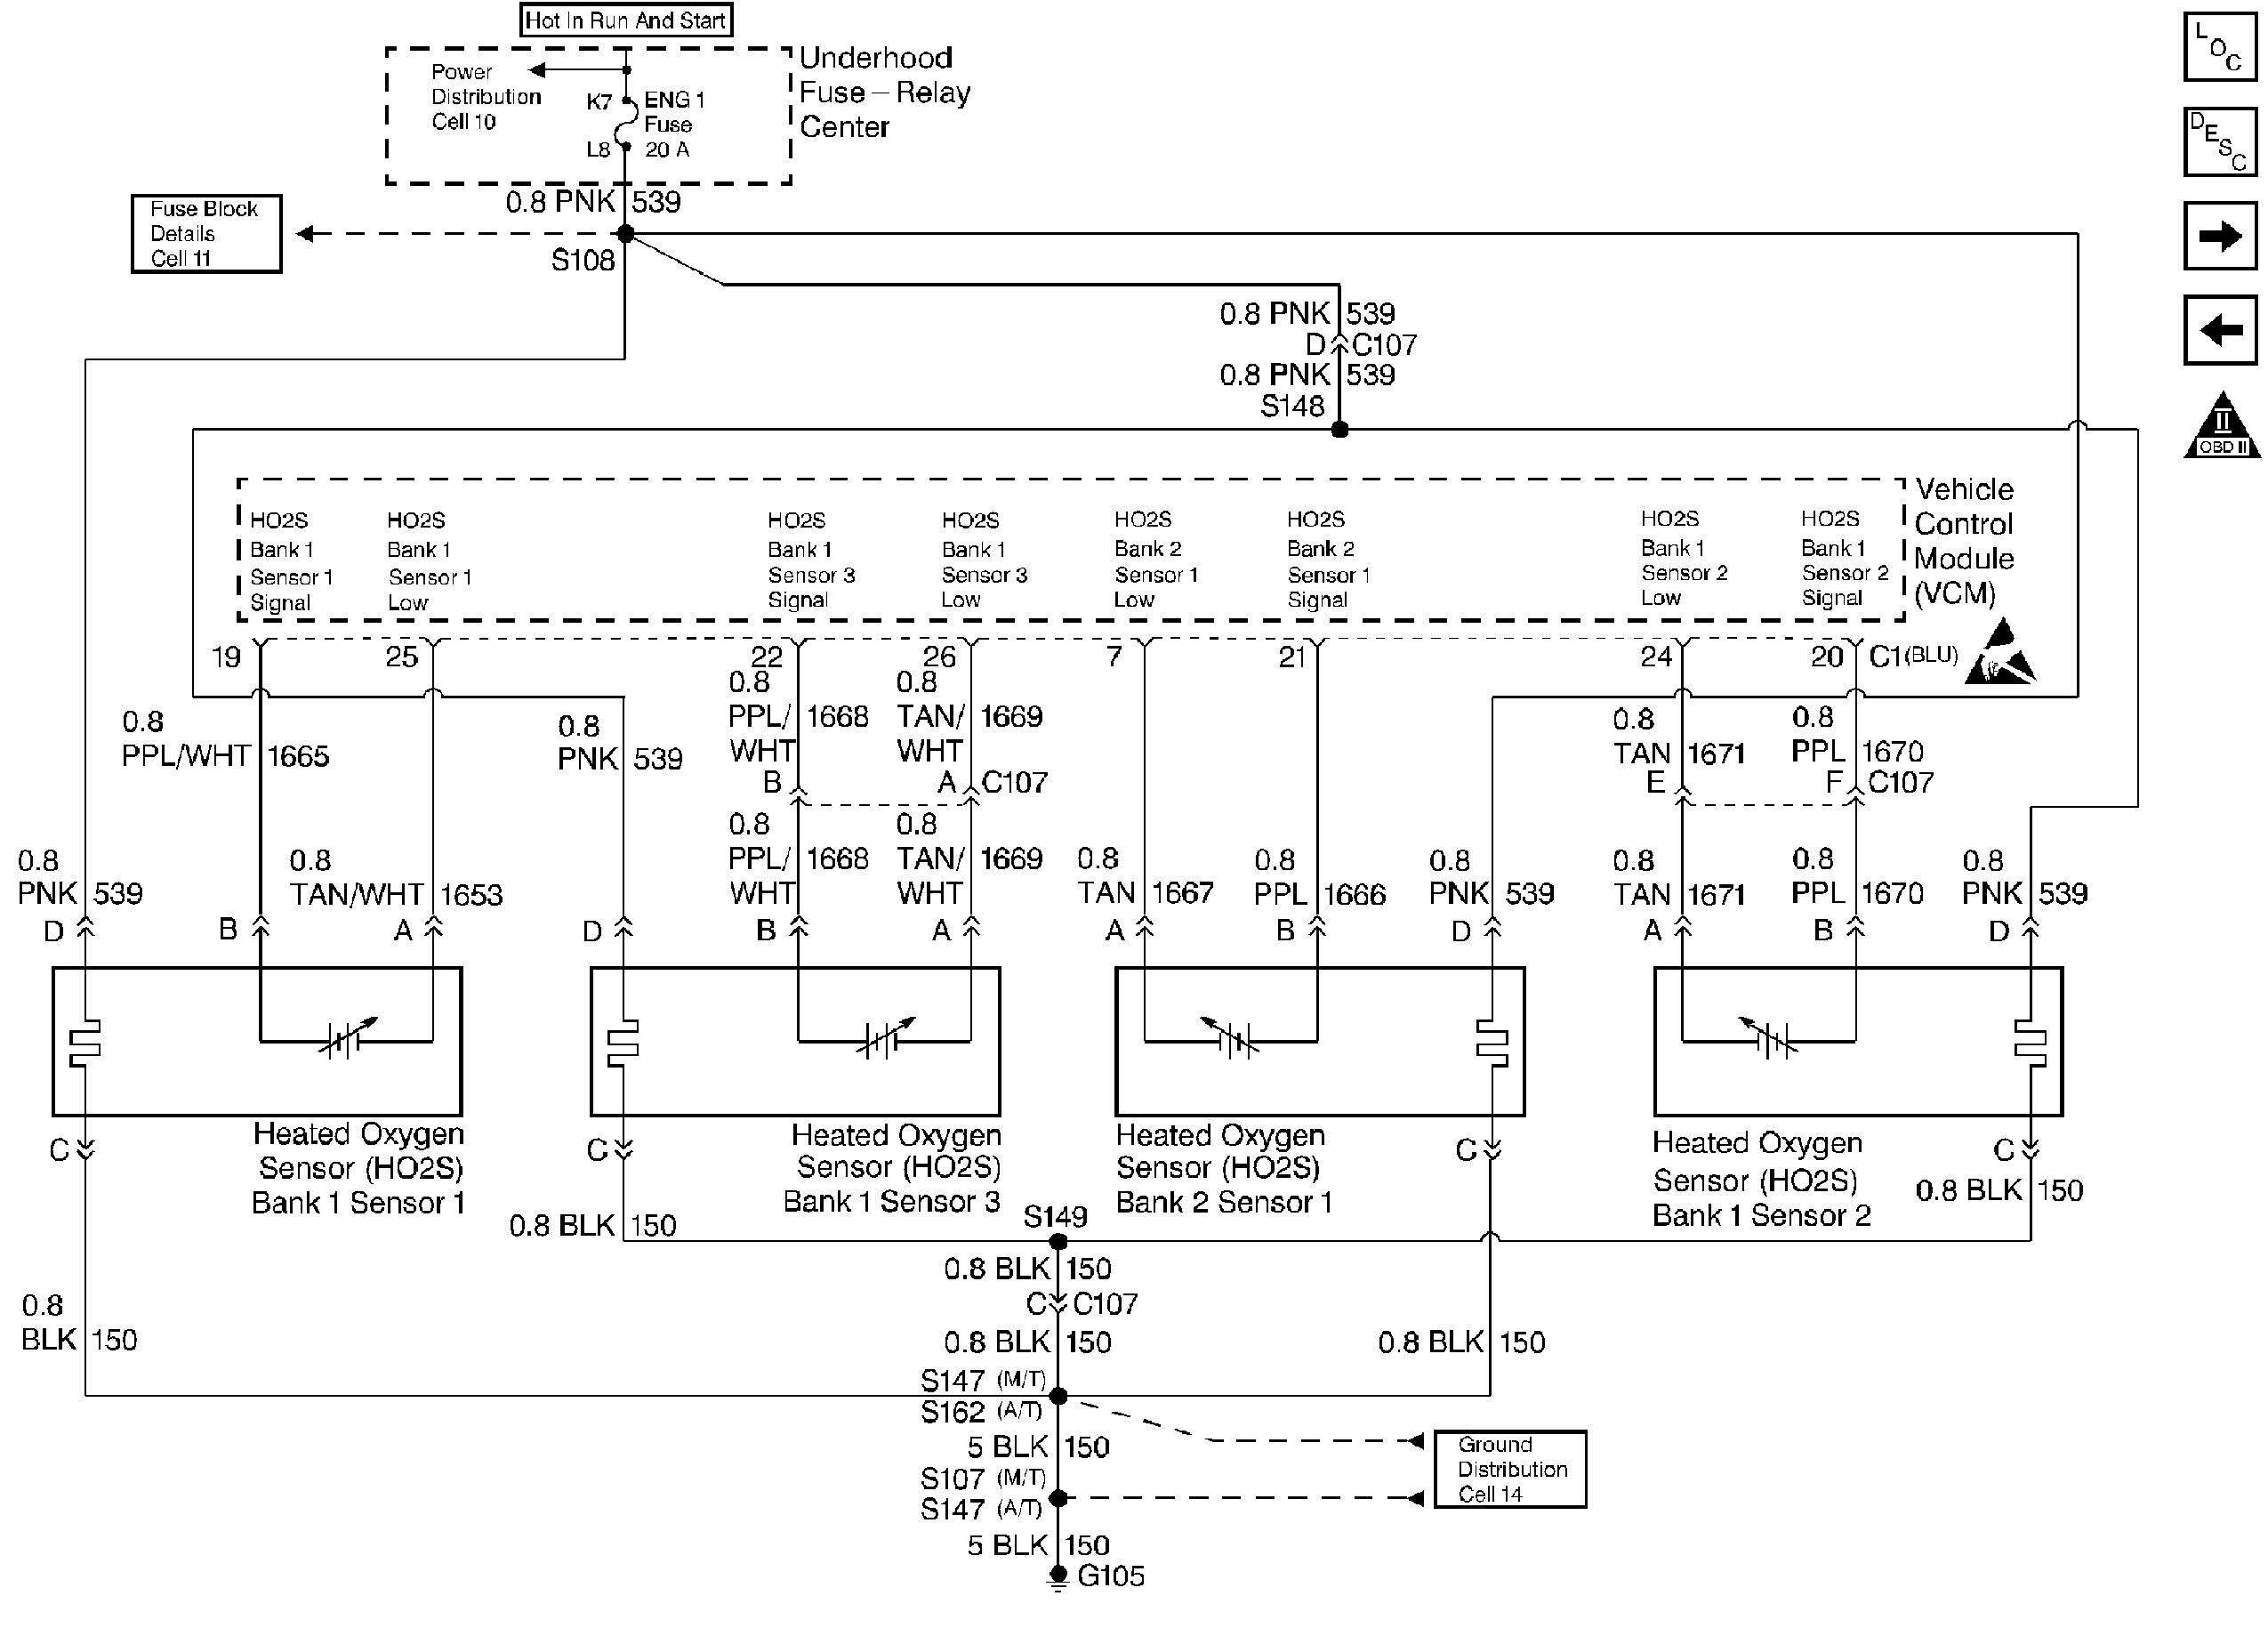 07 ram 5.7l 02 sensor wiring diagram